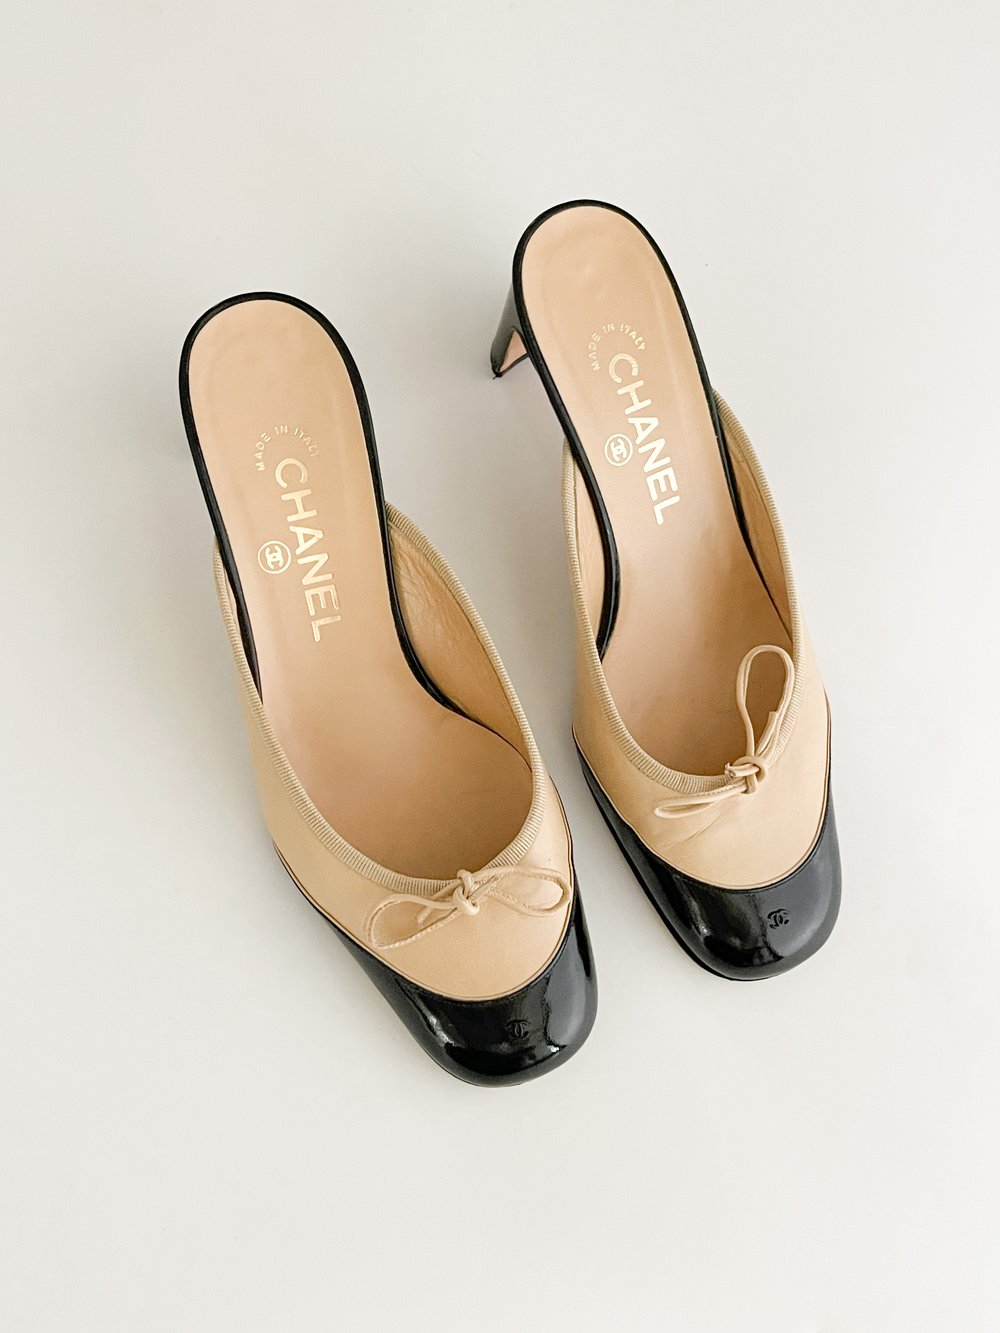 Chanel CC Tan & Black Mule Kitten Heels (US 7.5 / IT 37.5) — sororité.